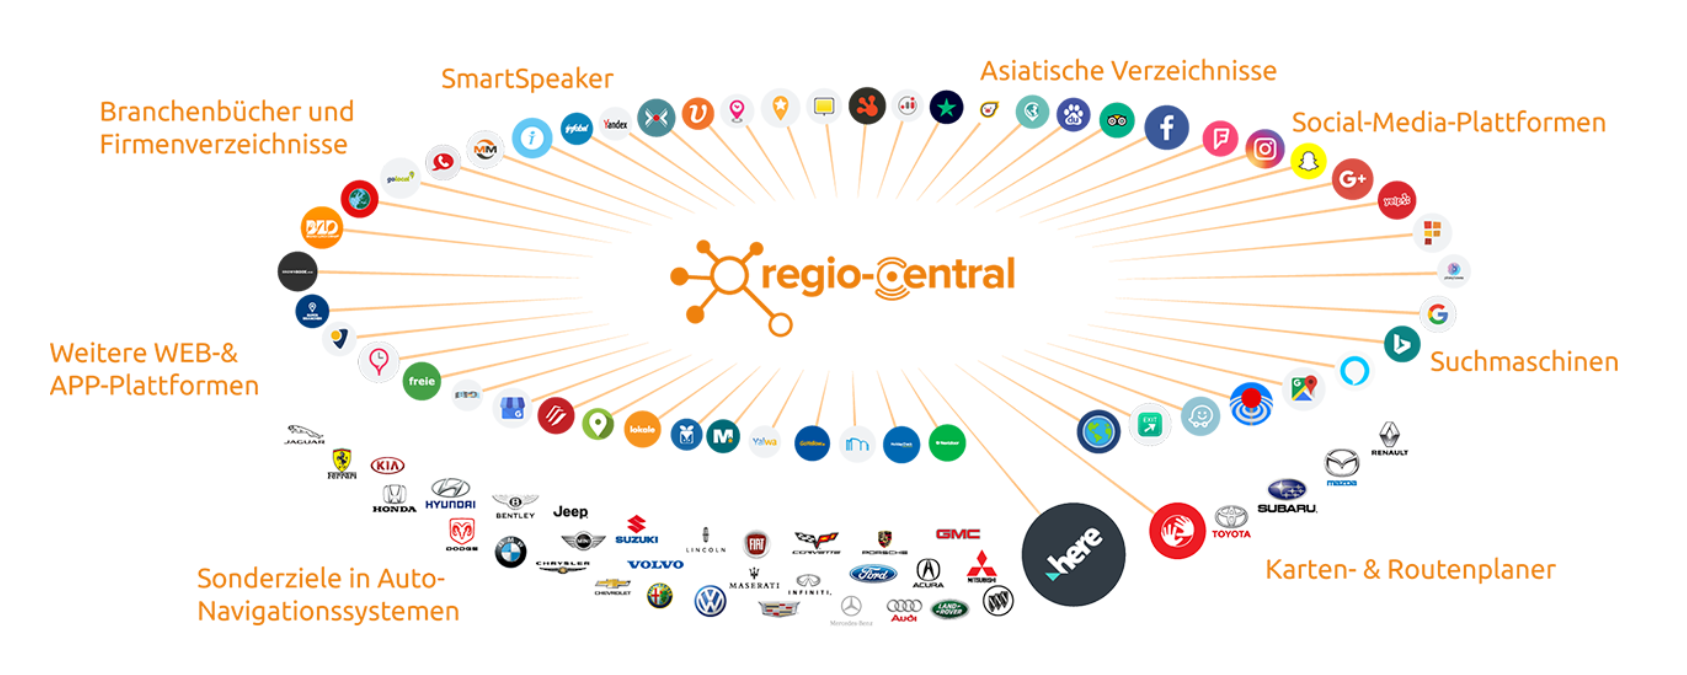 Regio Central ist ein führendes Unternehmen für Marketingdienstleistungen. Mit umfassendem Know-how in Standortmarketing, lokalem Marketing und digitalem Präsenzmarketing unterstützen sie Unternehmen dabei, ihre Onlinepräsenz zu optimieren und ihre Sichtbarkeit zu fördern. Mit maßgeschneiderten Lösungen und einer kundenorientierten Herangehensweise sind sie ein verlässlicher Partner für den Erfolg Ihres Unternehmens. Kontaktieren Sie Regio Central noch heute, um weitere Informationen zu erhalten und wie sie Ihnen helfen können.